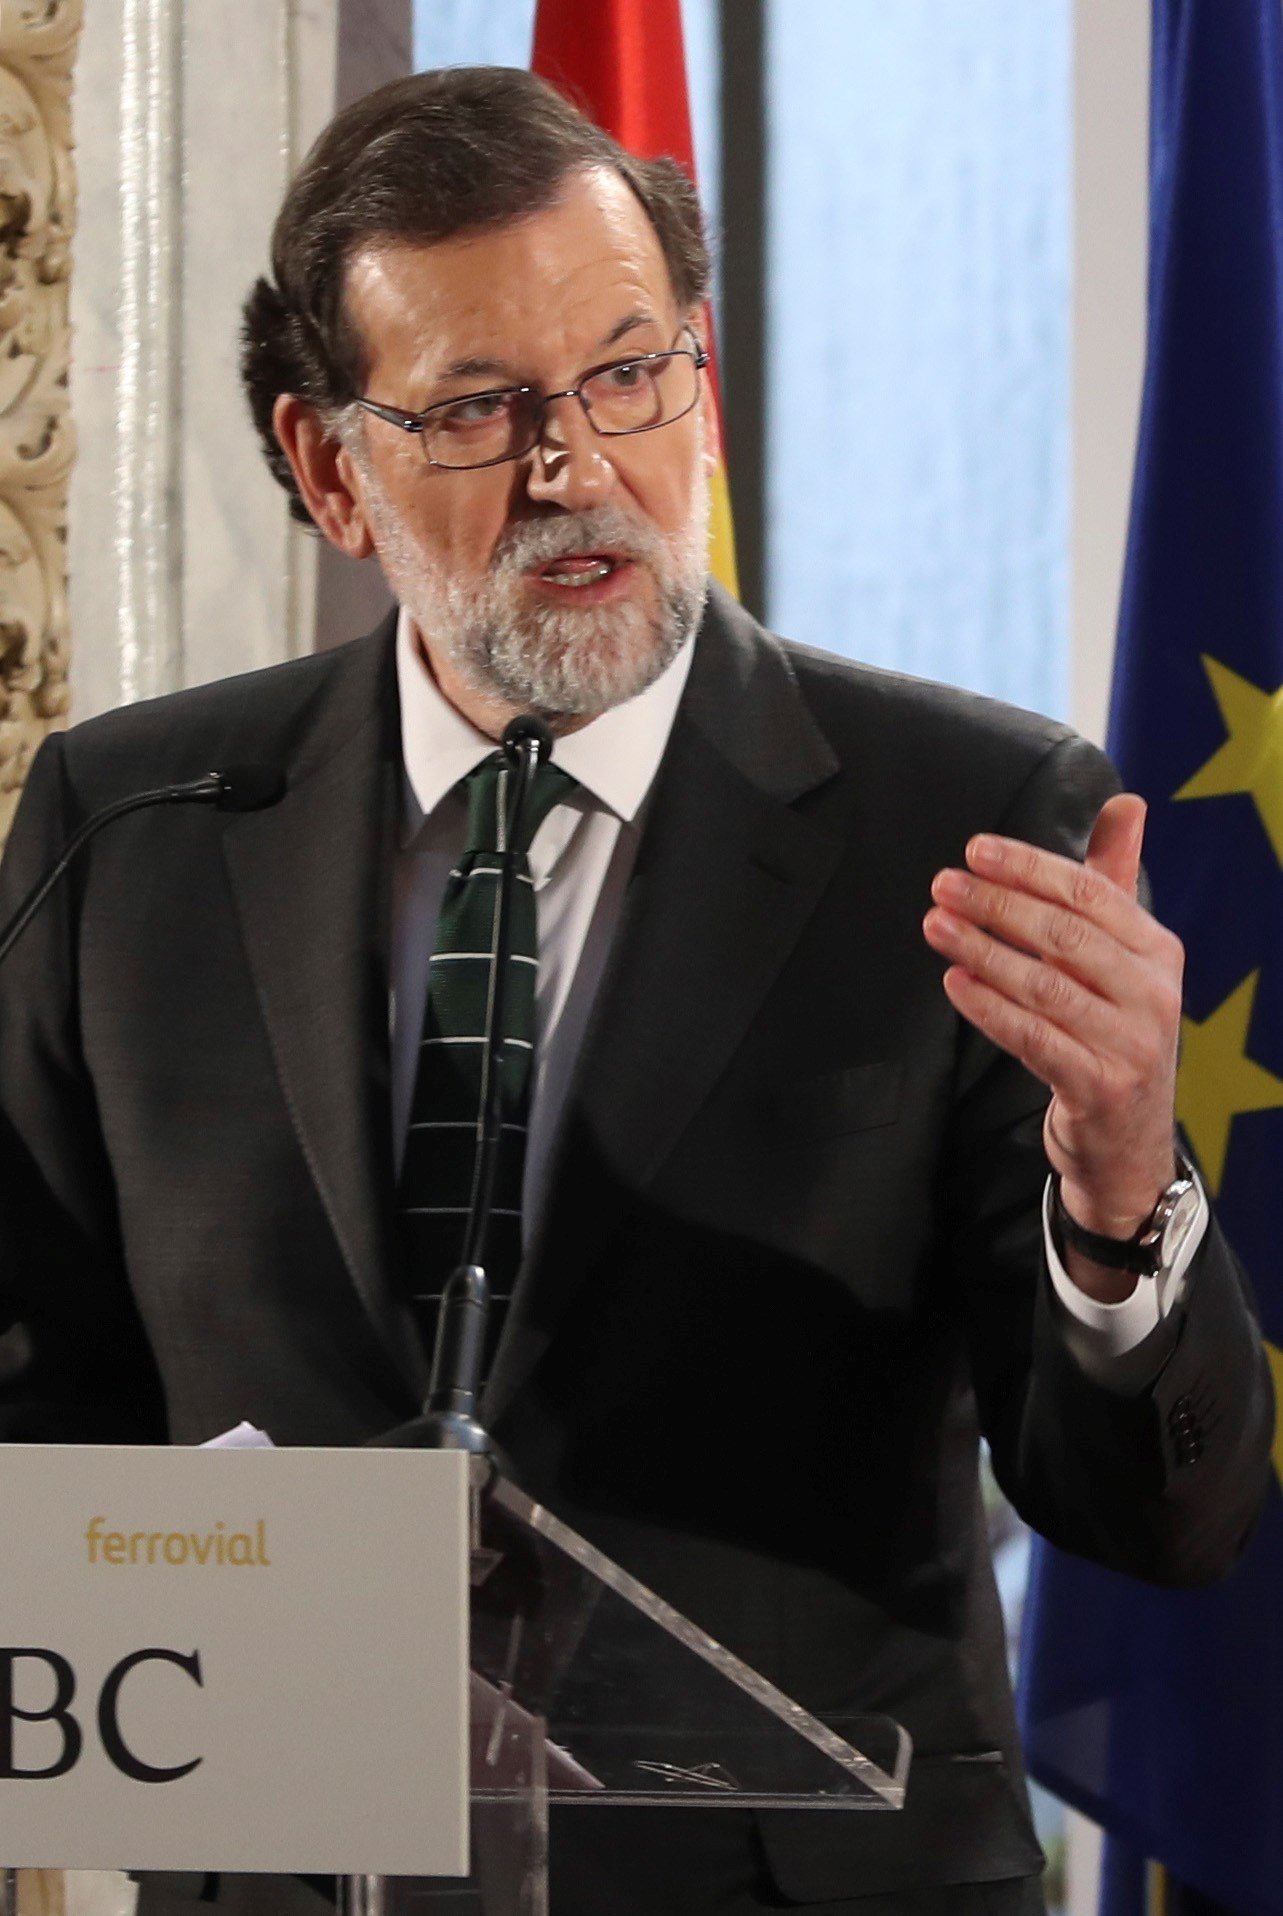 Rajoy: "No m'agradaria veure Neymar vestit de blanc"